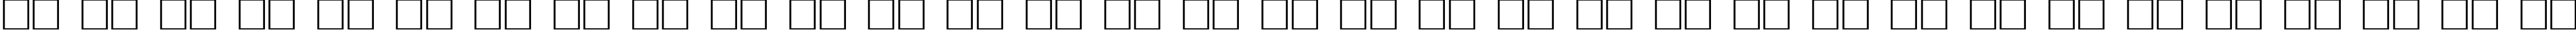 Пример написания русского алфавита шрифтом Davys Regular